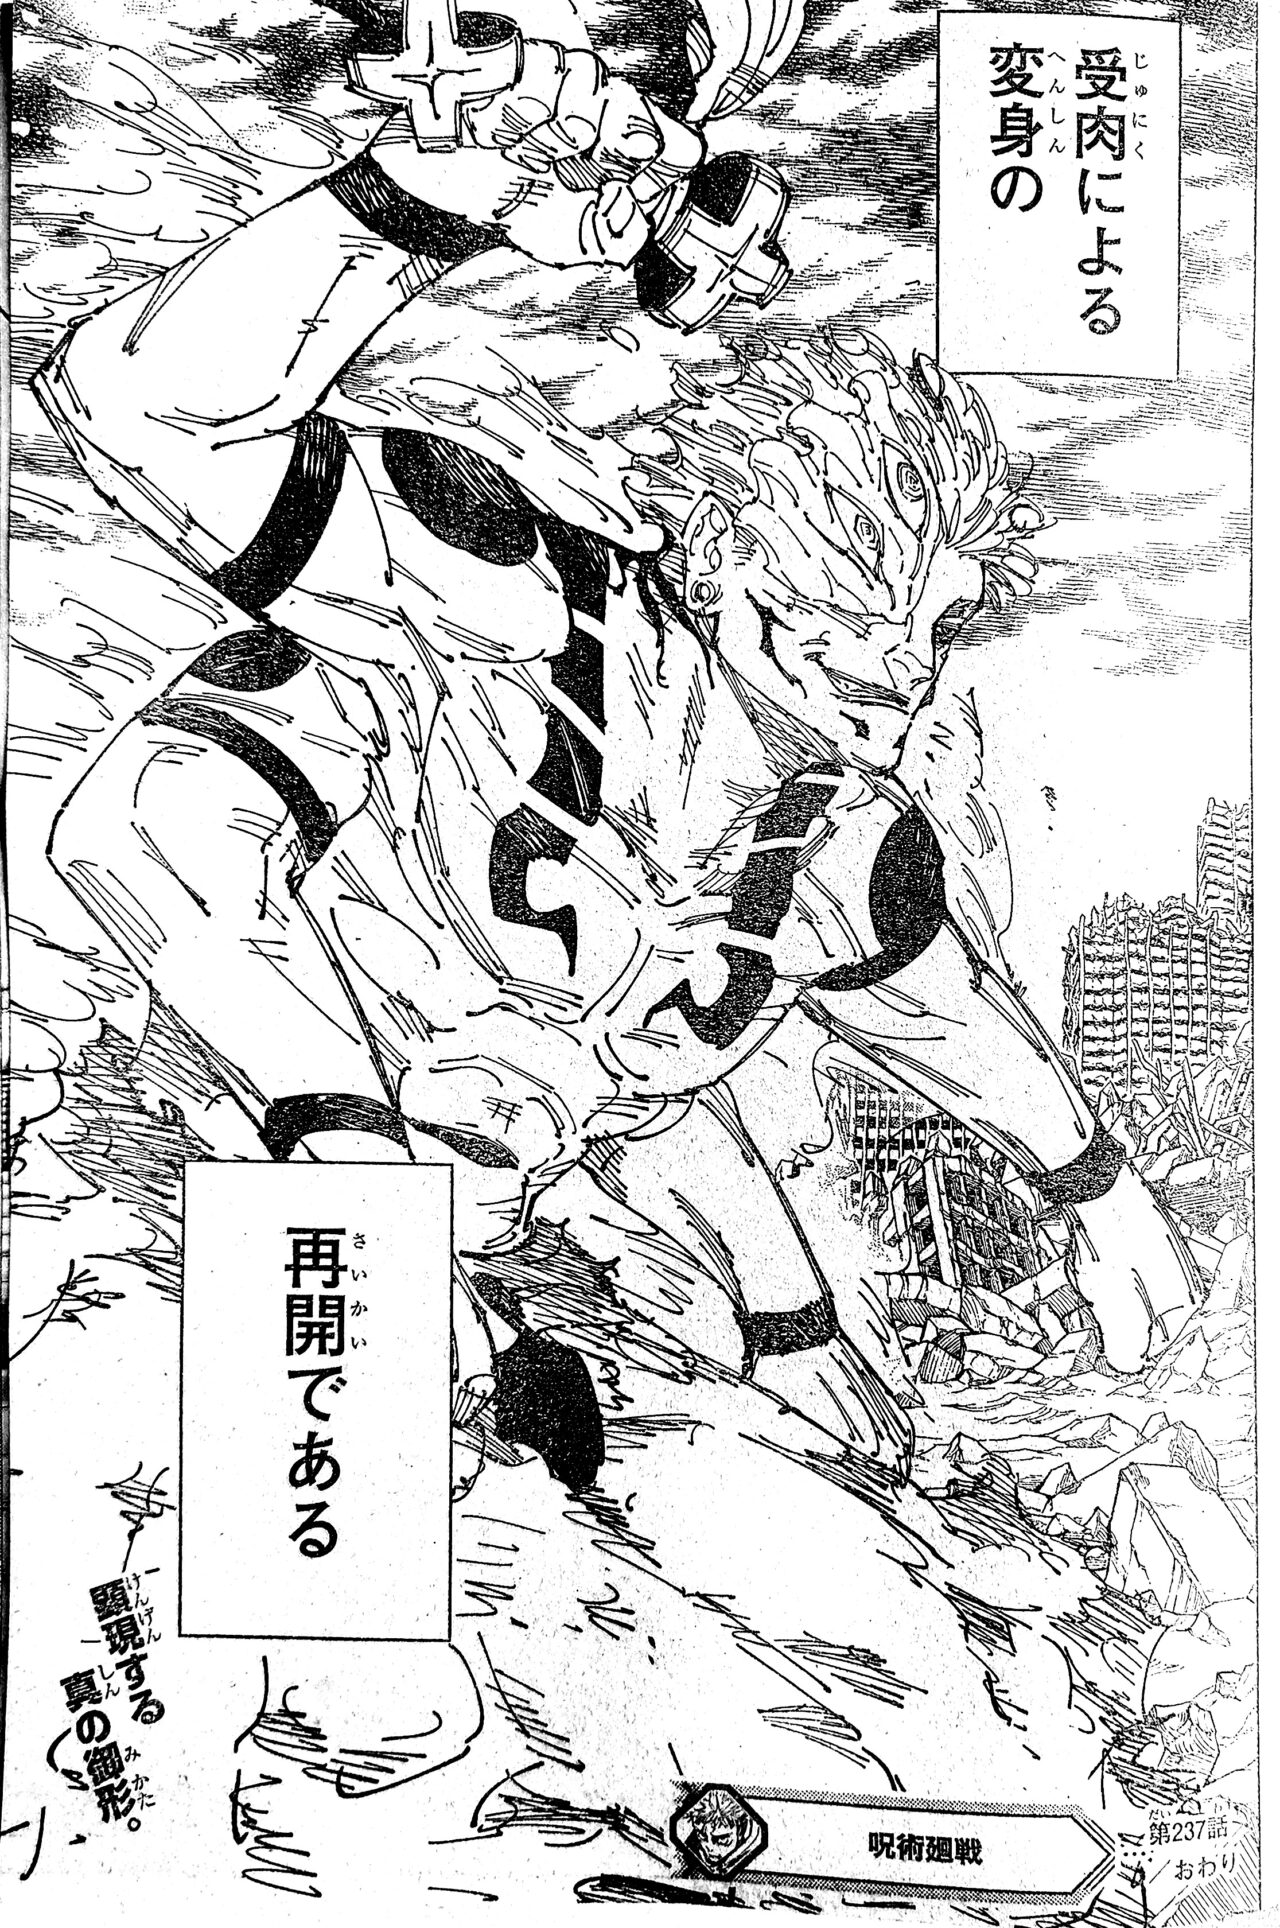 Sukuna finalmente atinge sua forma completa em Jujutsu Kaisen 237